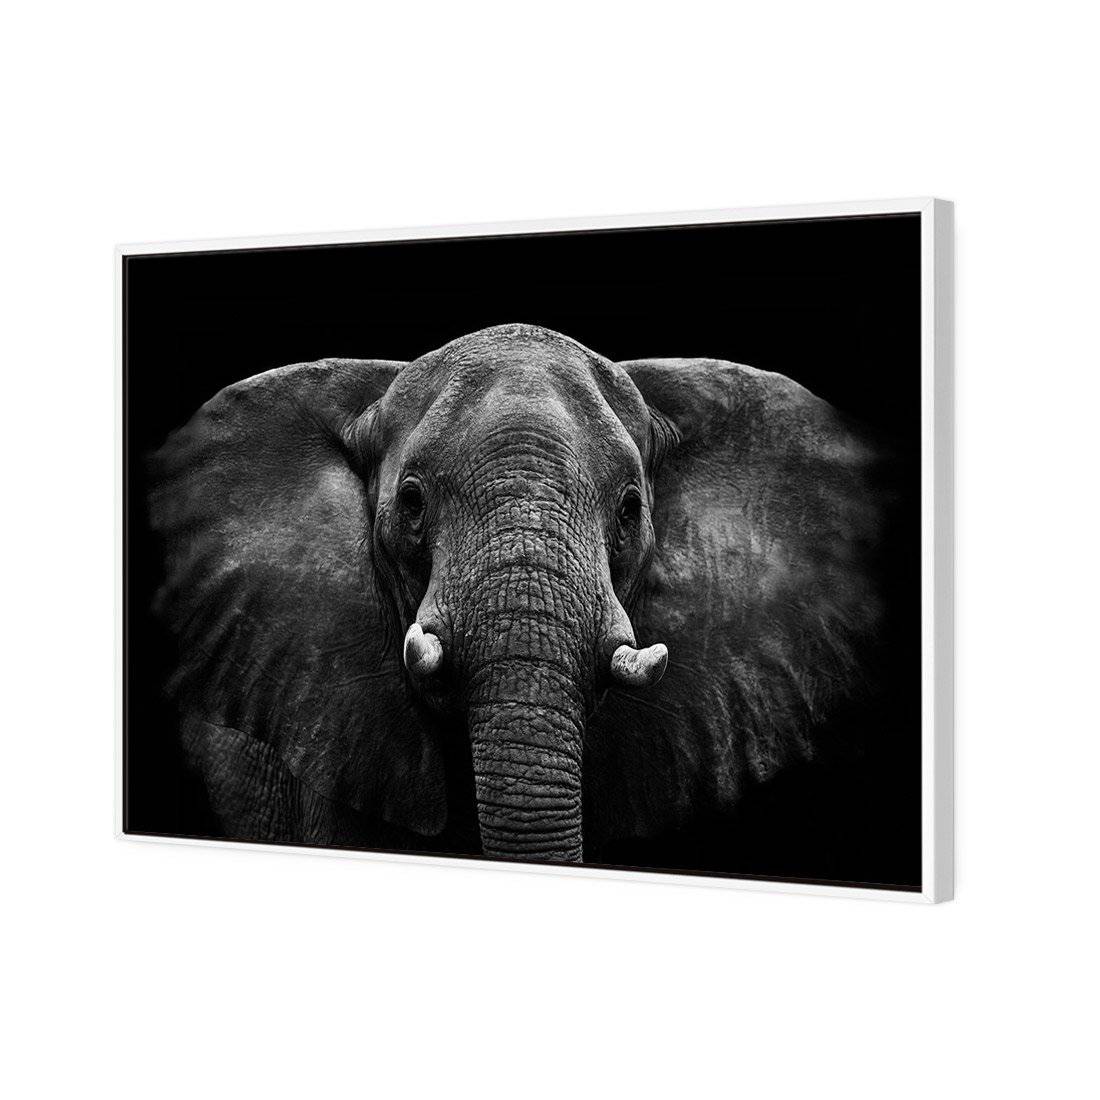 Regal Elephant Canvas Art-Canvas-Wall Art Designs-45x30cm-Canvas - White Frame-Wall Art Designs